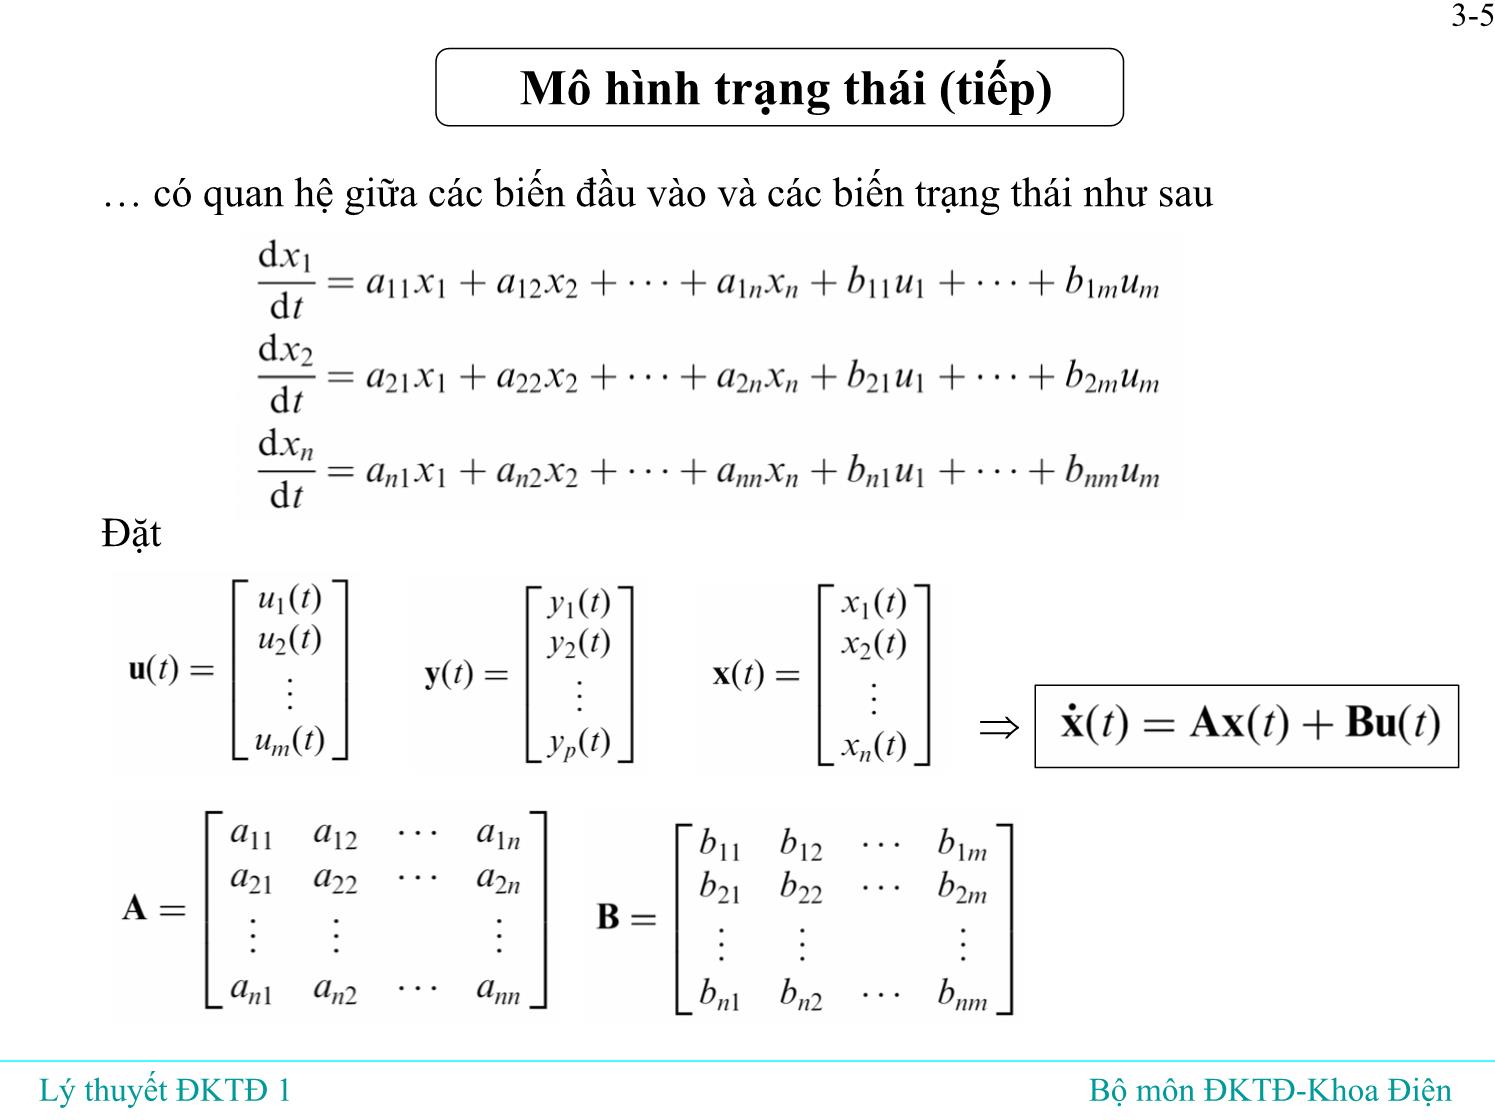 Bài giảng Lý thuyết điều khiển tự động - Bài 3: Mô hình toán học của hệ liên tục tuyến tín - Đỗ Tú Anh trang 6